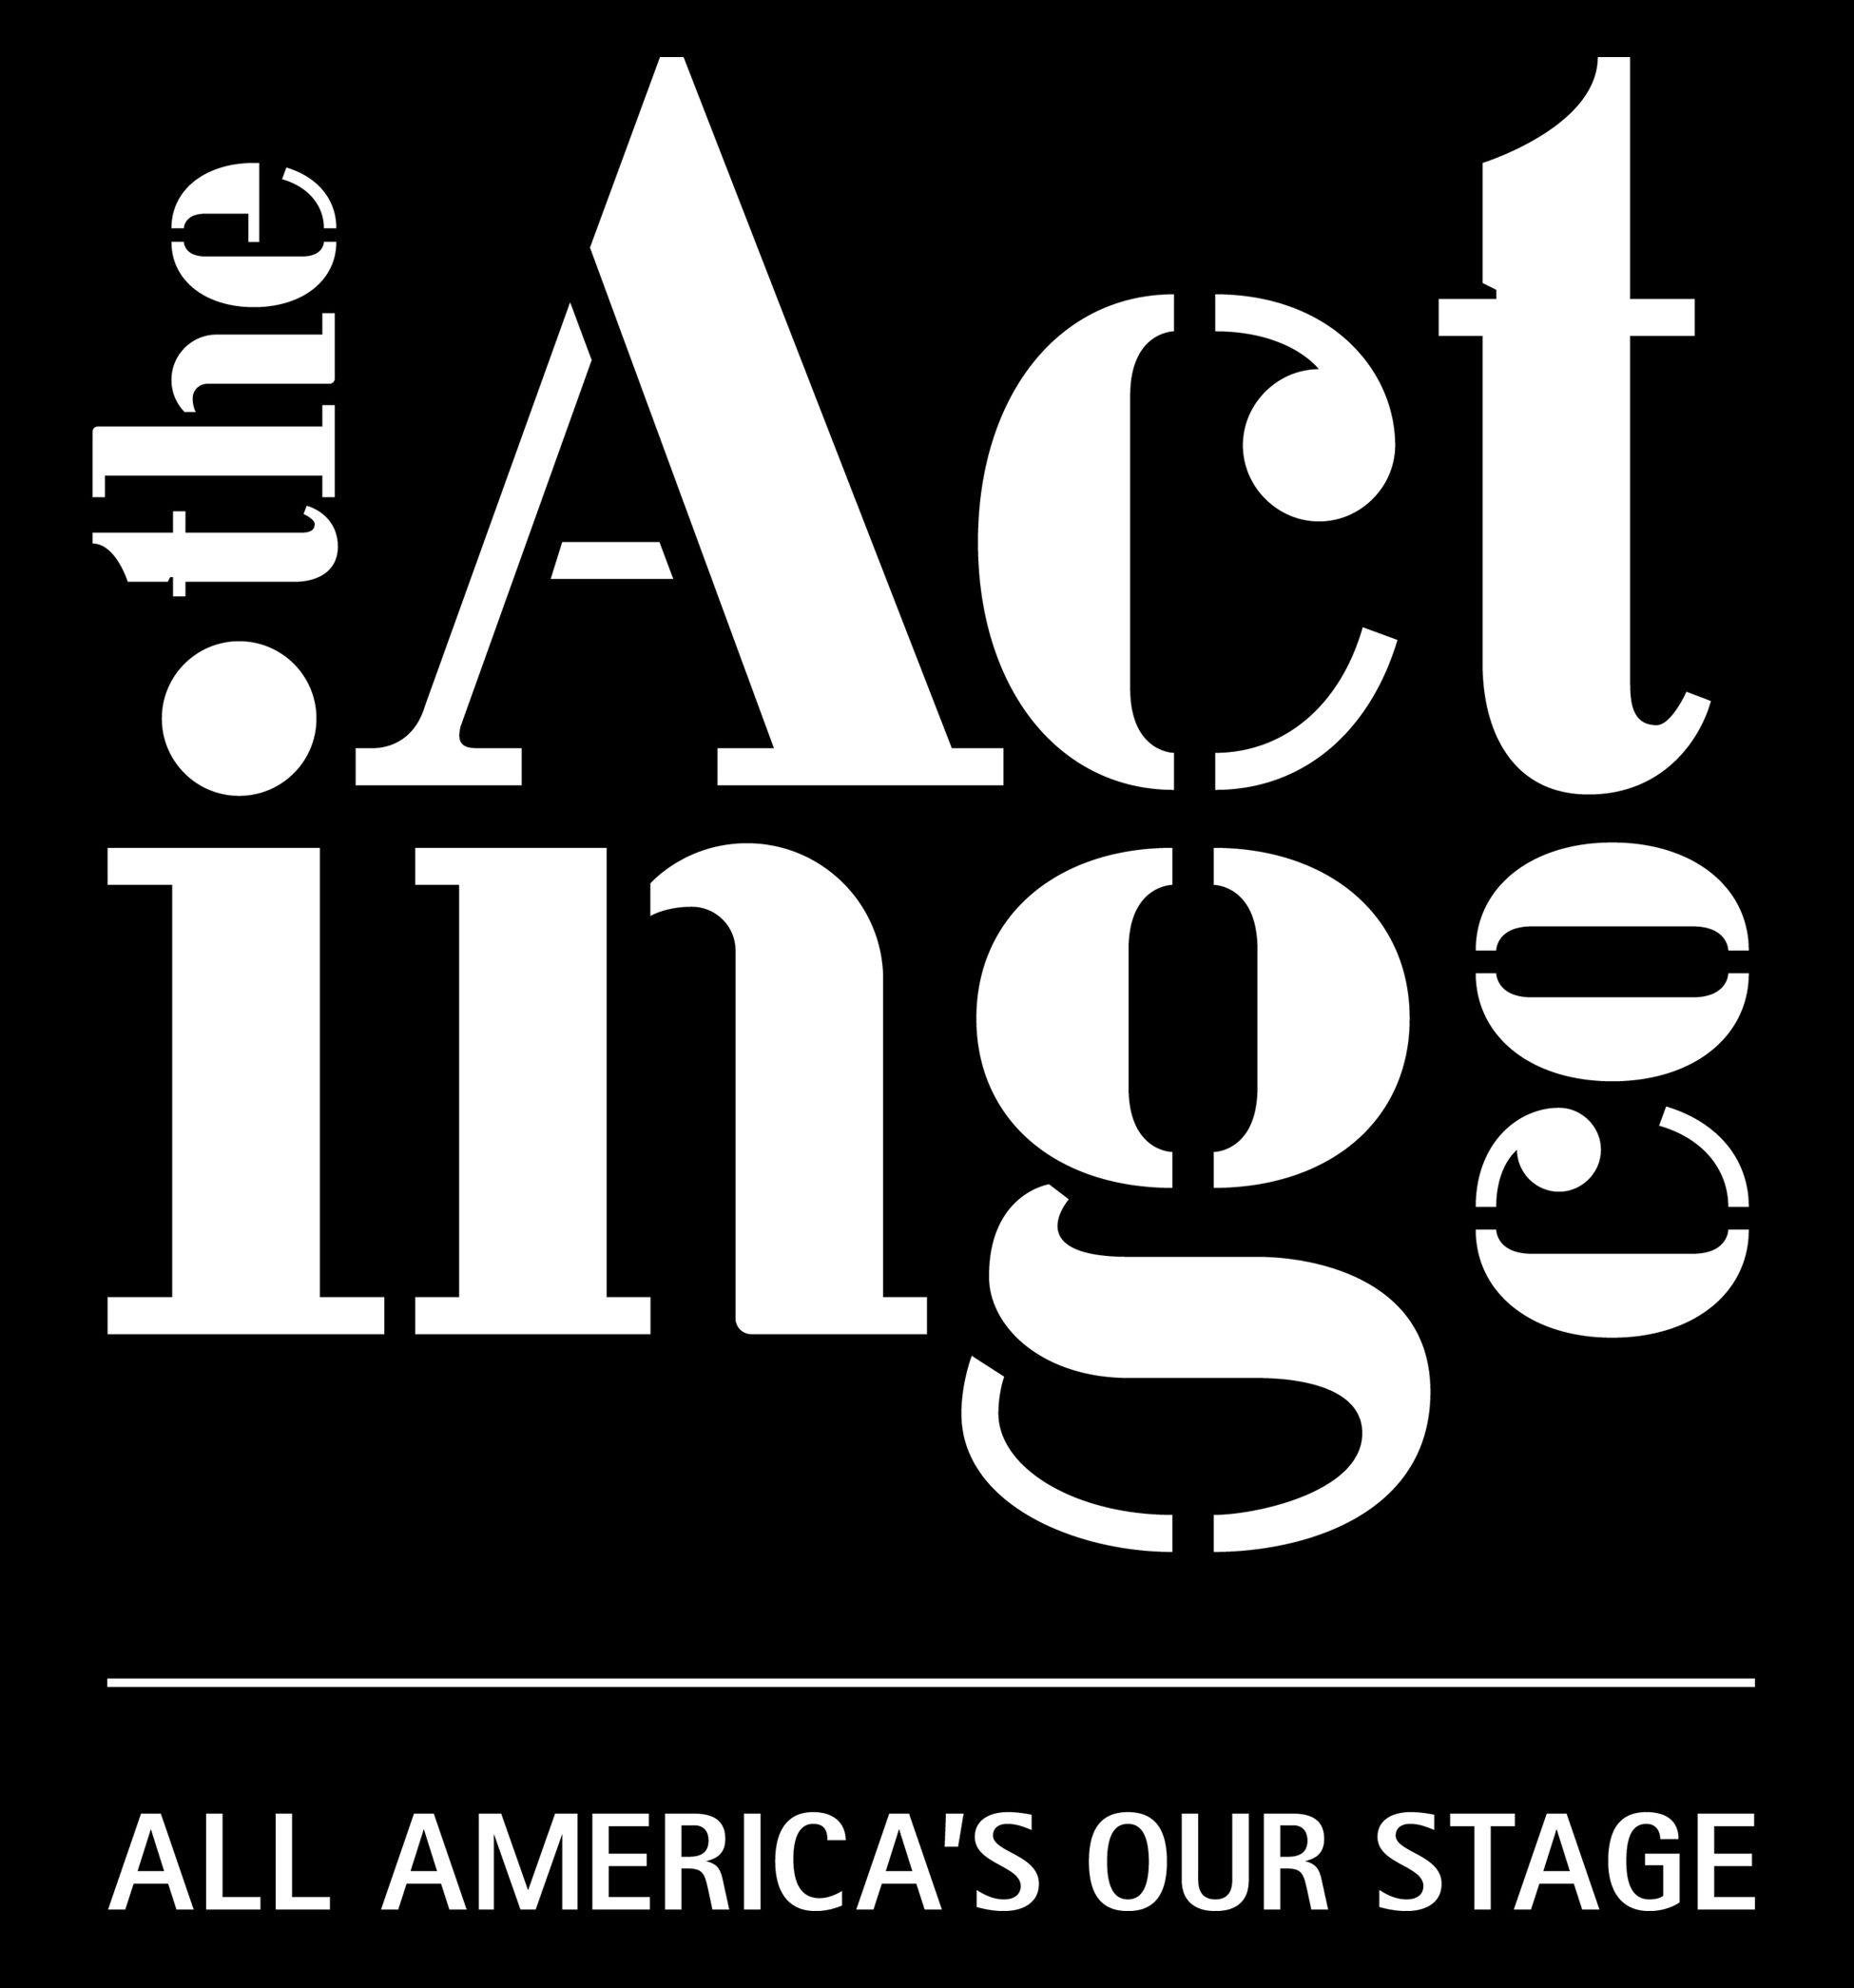 The Act логотип. The Act лого. Act logo. Acting logo. Acting company